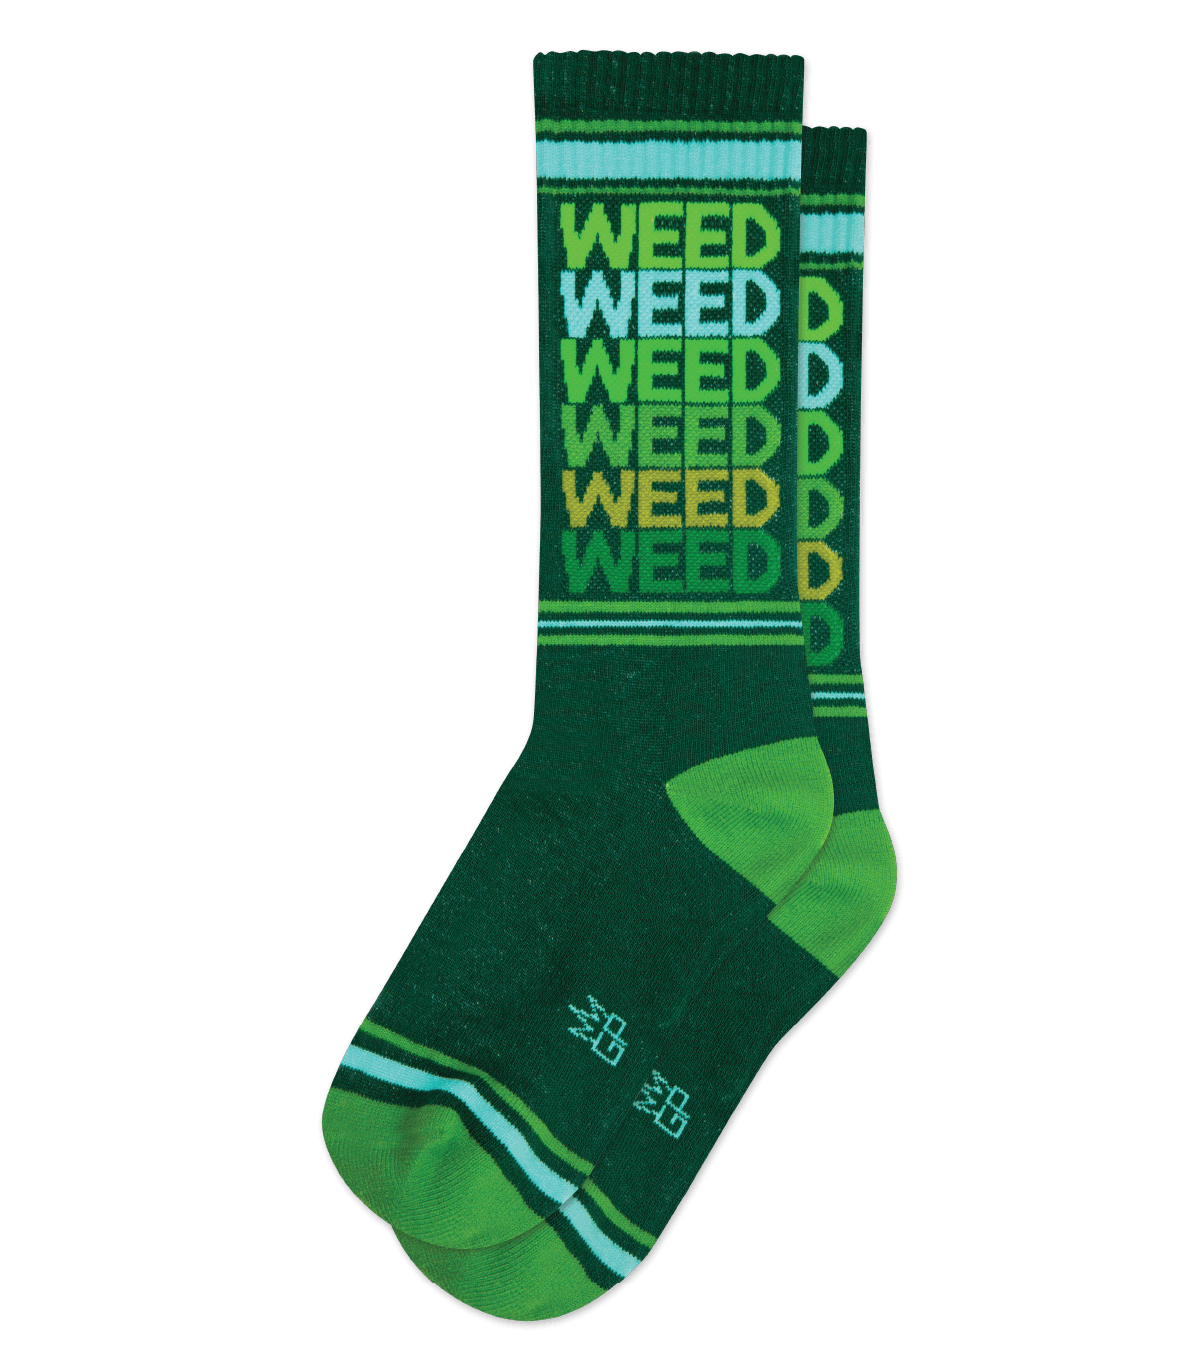 Weed gym socks